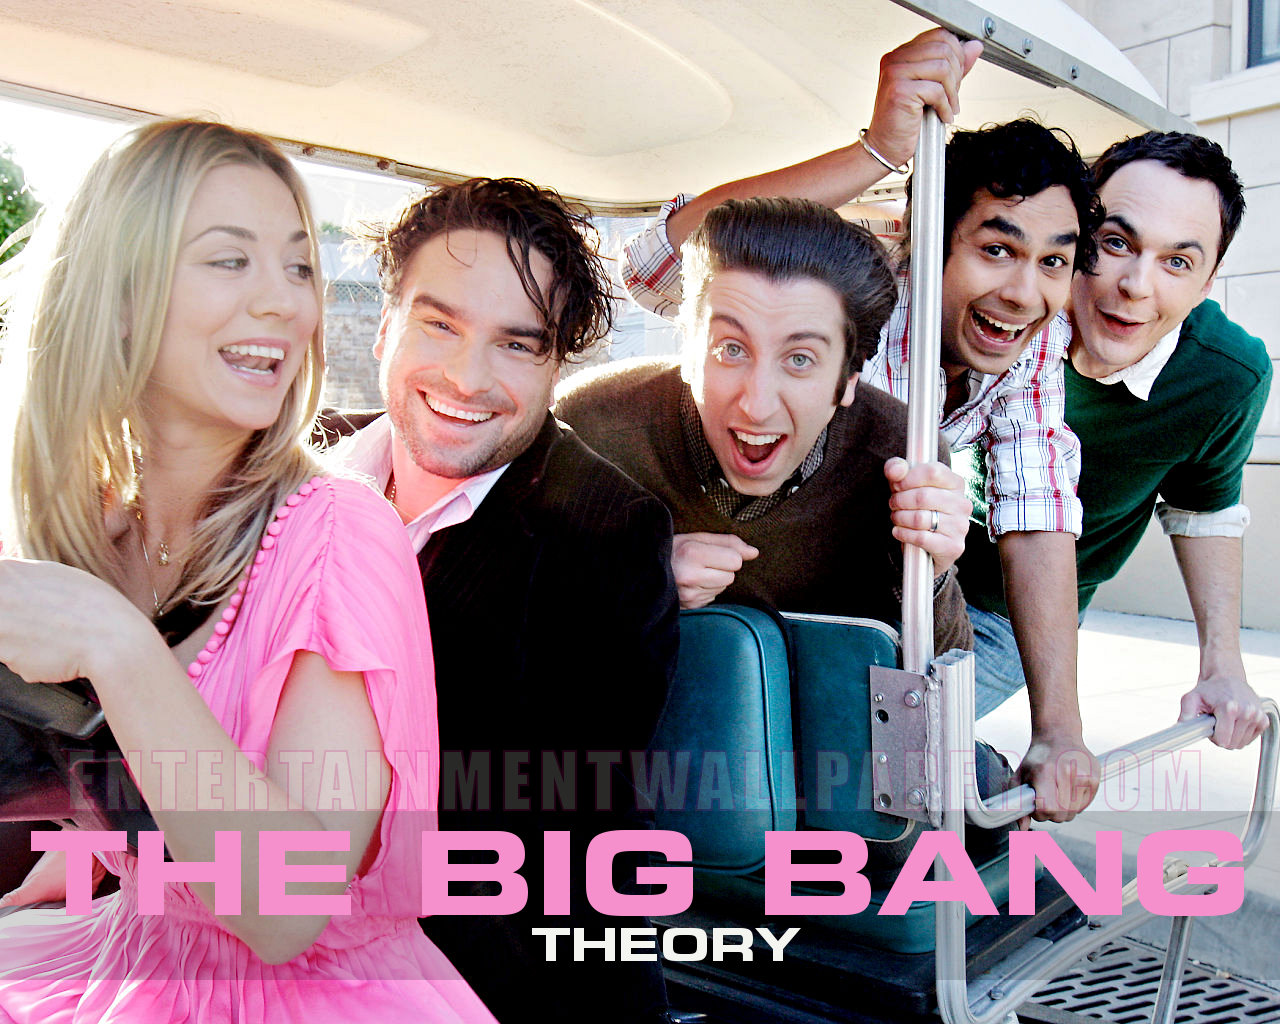 Big Bang Theory Cast Crying - HD Wallpaper 